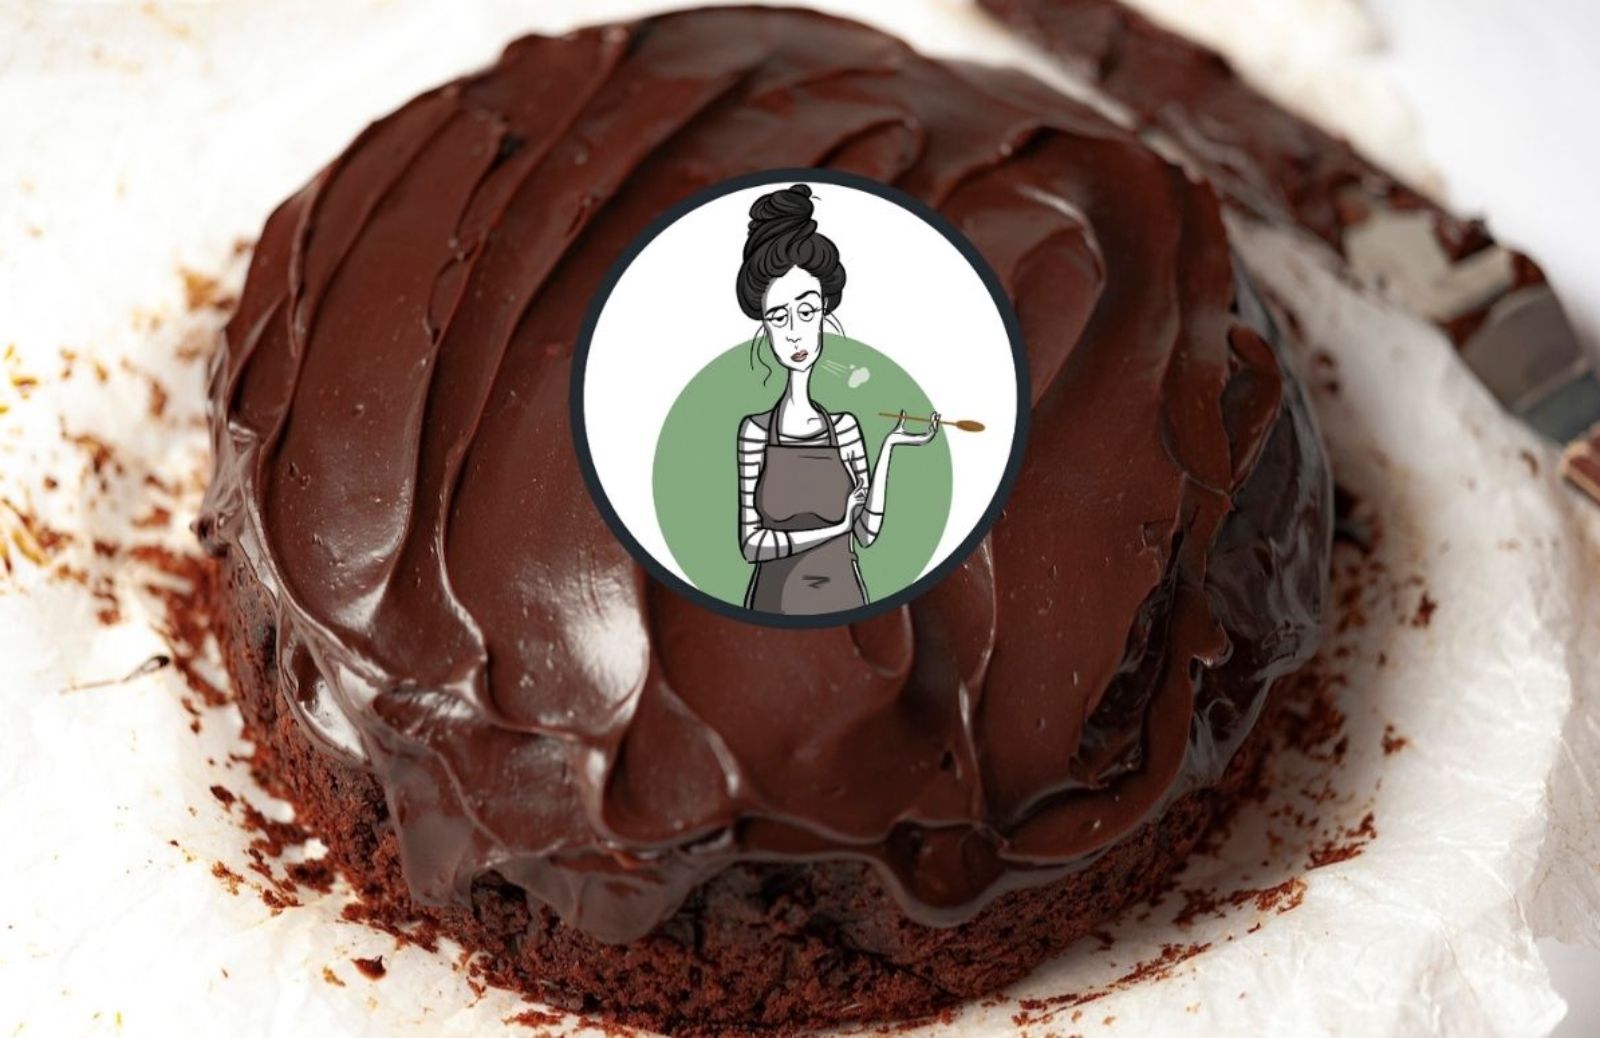 Una torta al cioccolato: il compleanno degli adulti